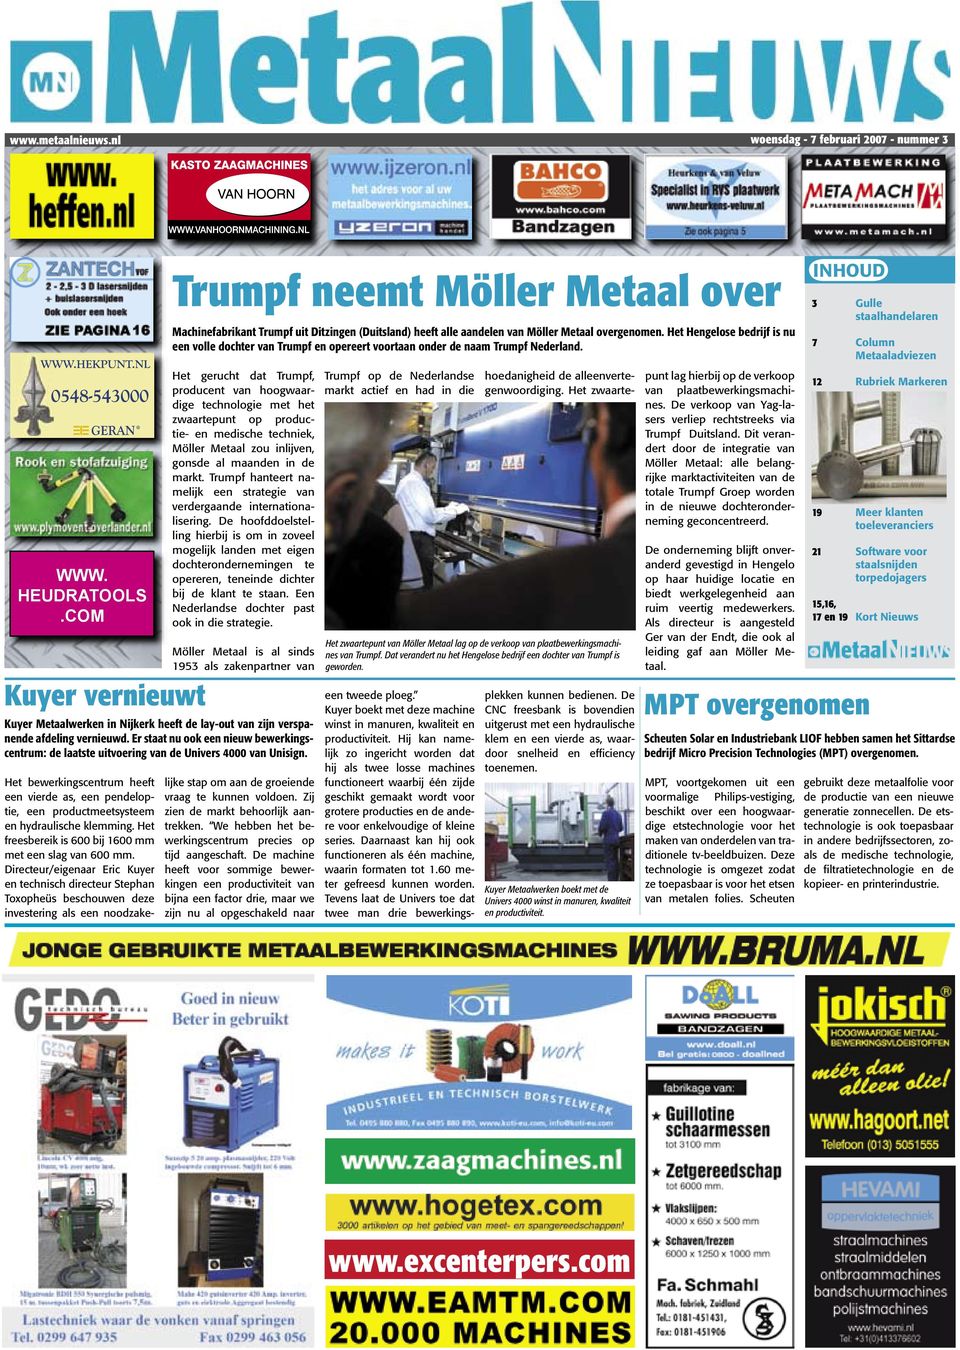 Trumpf neemt Möller Metaal over Machinefabrikant Trumpf uit Ditzingen (Duitsland) heeft alle aandelen van Möller Metaal overgenomen.